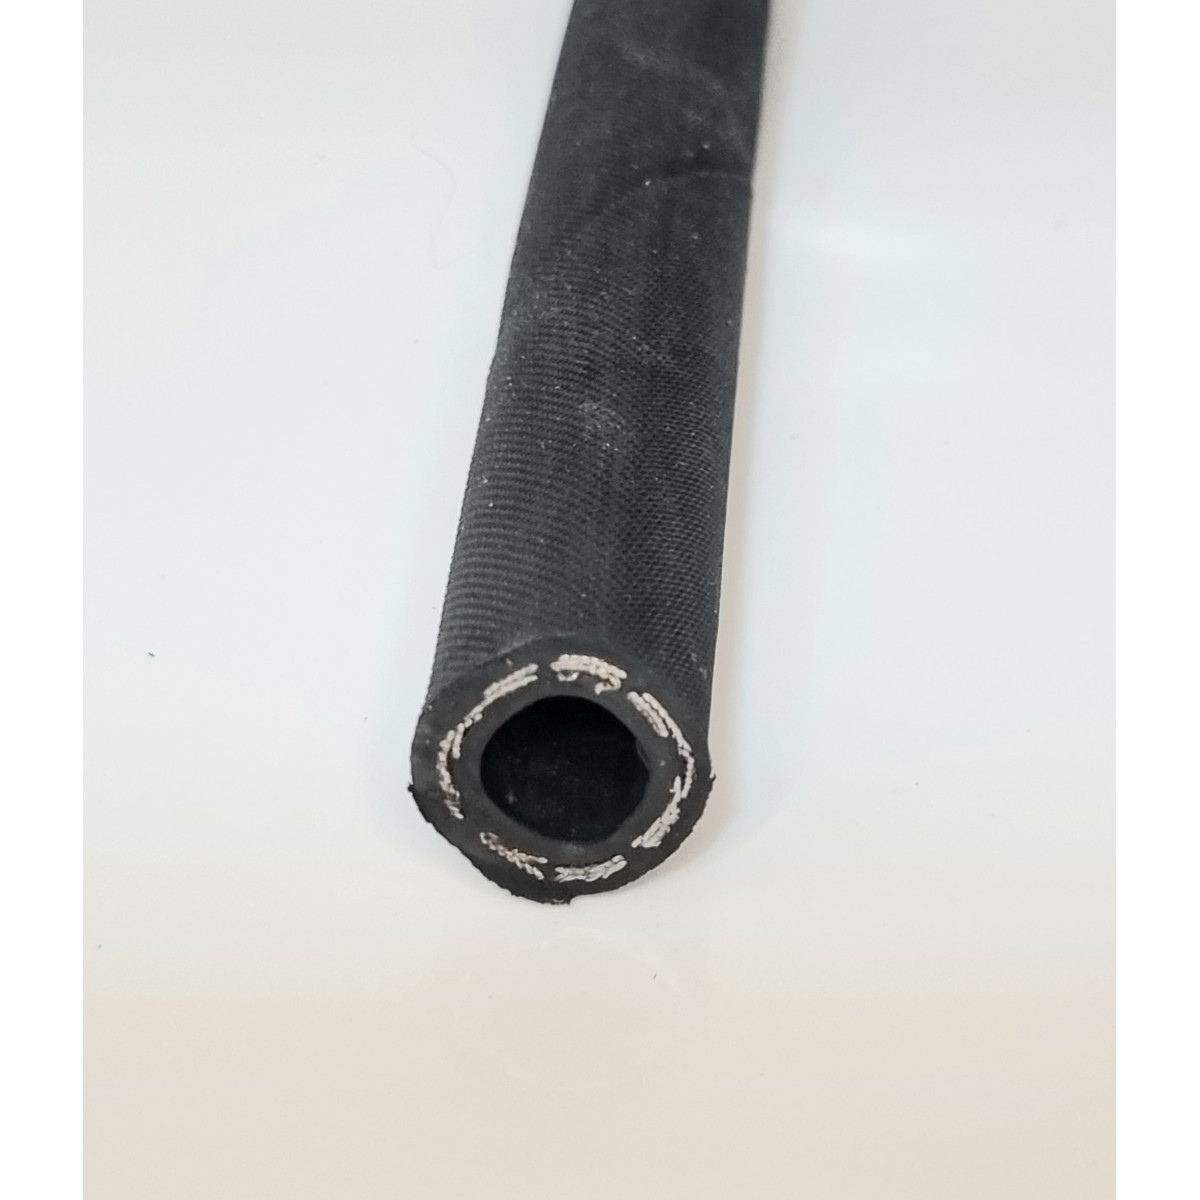 Tuyau hydrocarbure 100R4 tressé textile et spirale acier